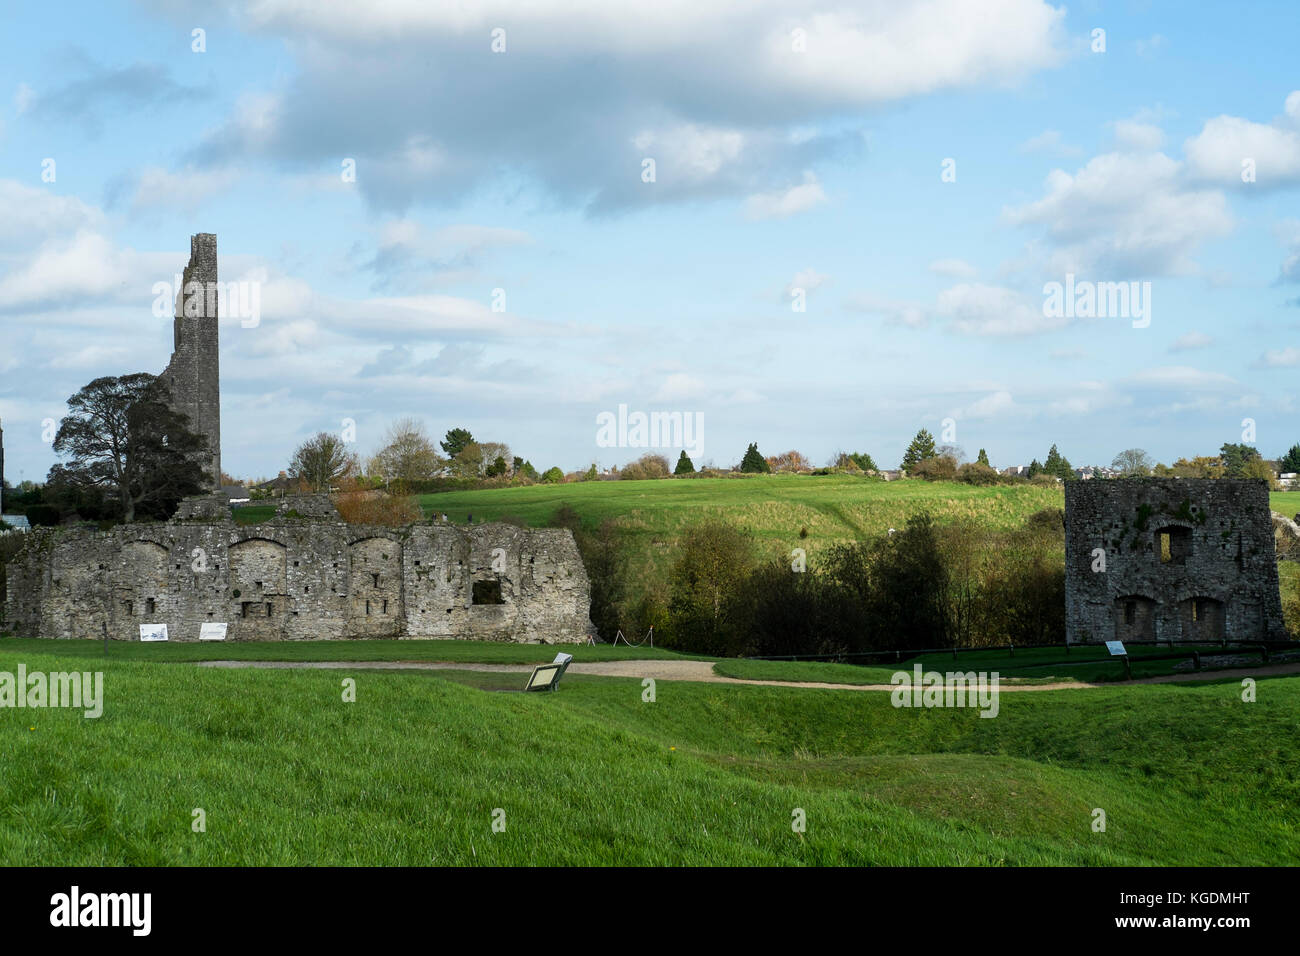 Der gelbe Kirchturm der St. Mary's Abbey und die Vorhangmauer des Trim Castle in der Grafschaft Meath in der Nähe von Dublin, Irland, Standort Braveheart Stockfoto